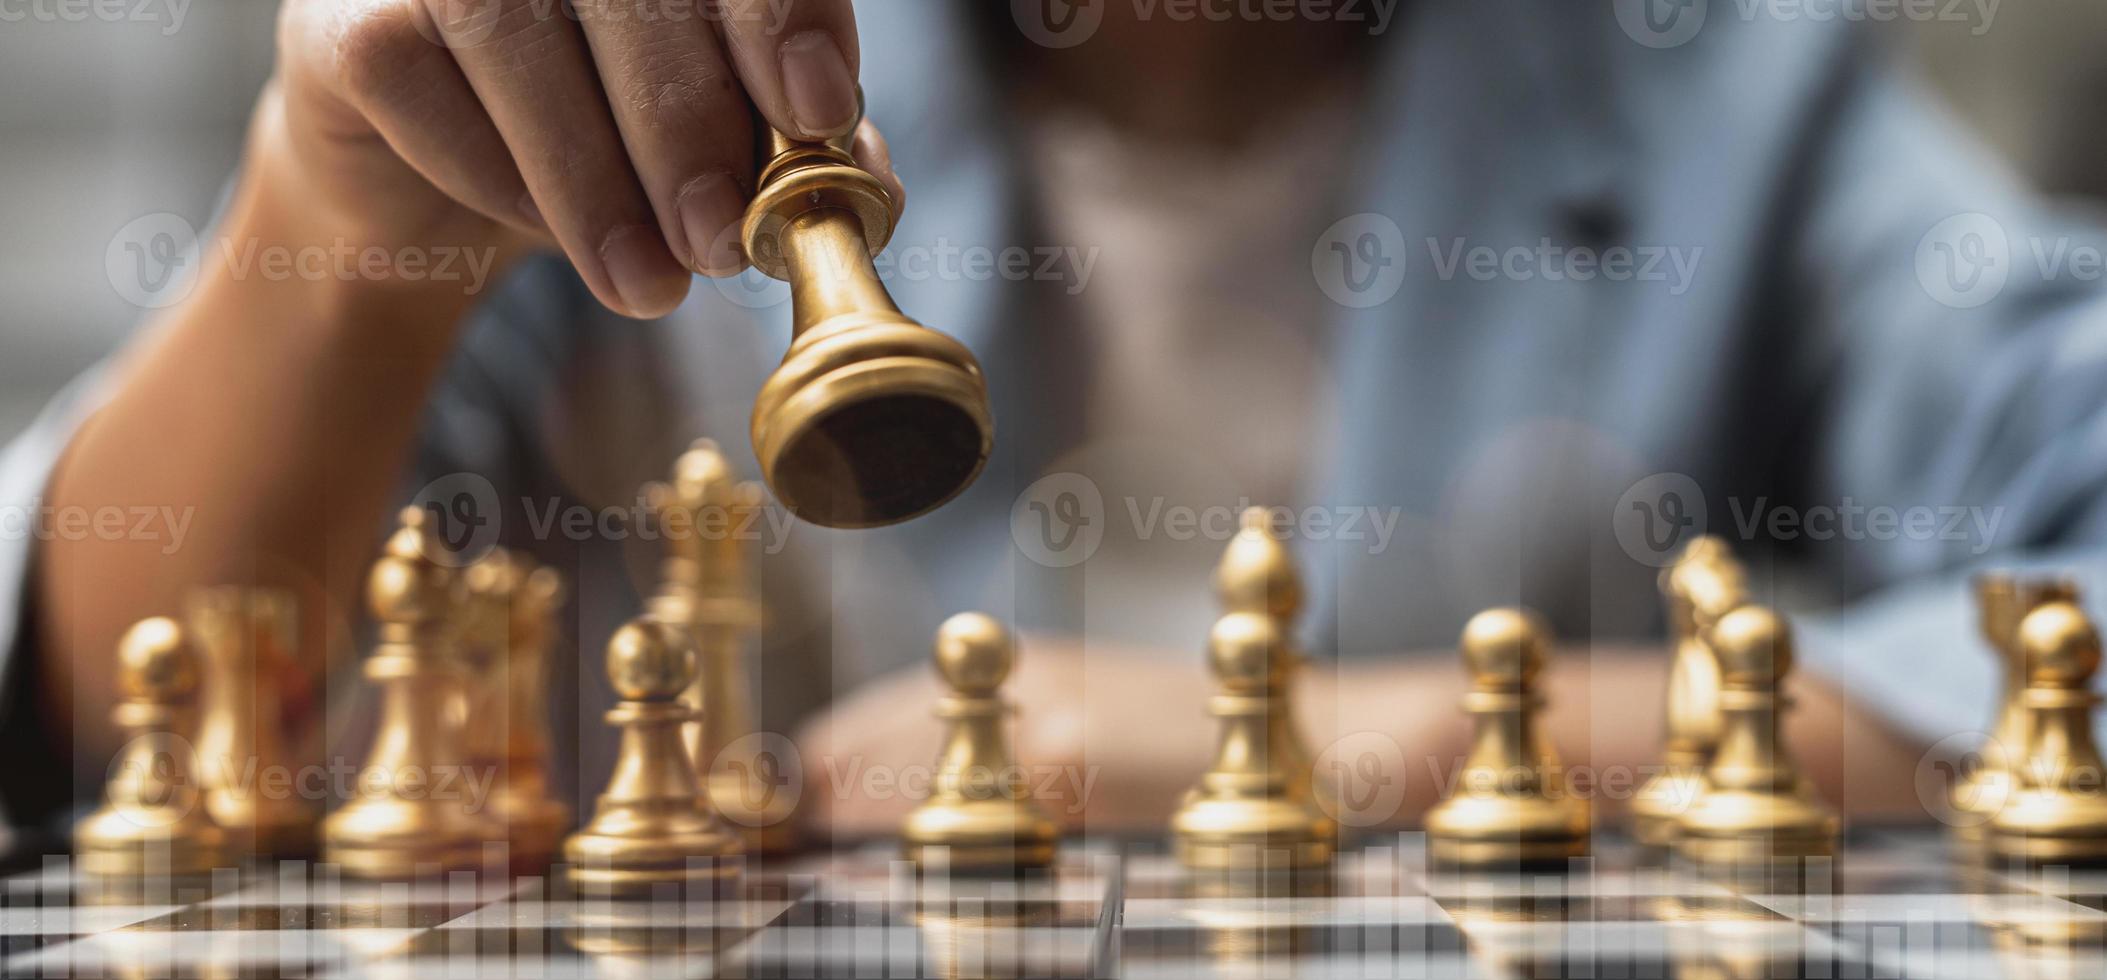 persona che tiene pezzi degli scacchi dorati per eseguire un gioco, immagine concettuale di un uomo d'affari che gioca a scacchiera rispetto alla gestione di un'impresa a rischio, grafica del grafico che mostra i flussi finanziari. foto